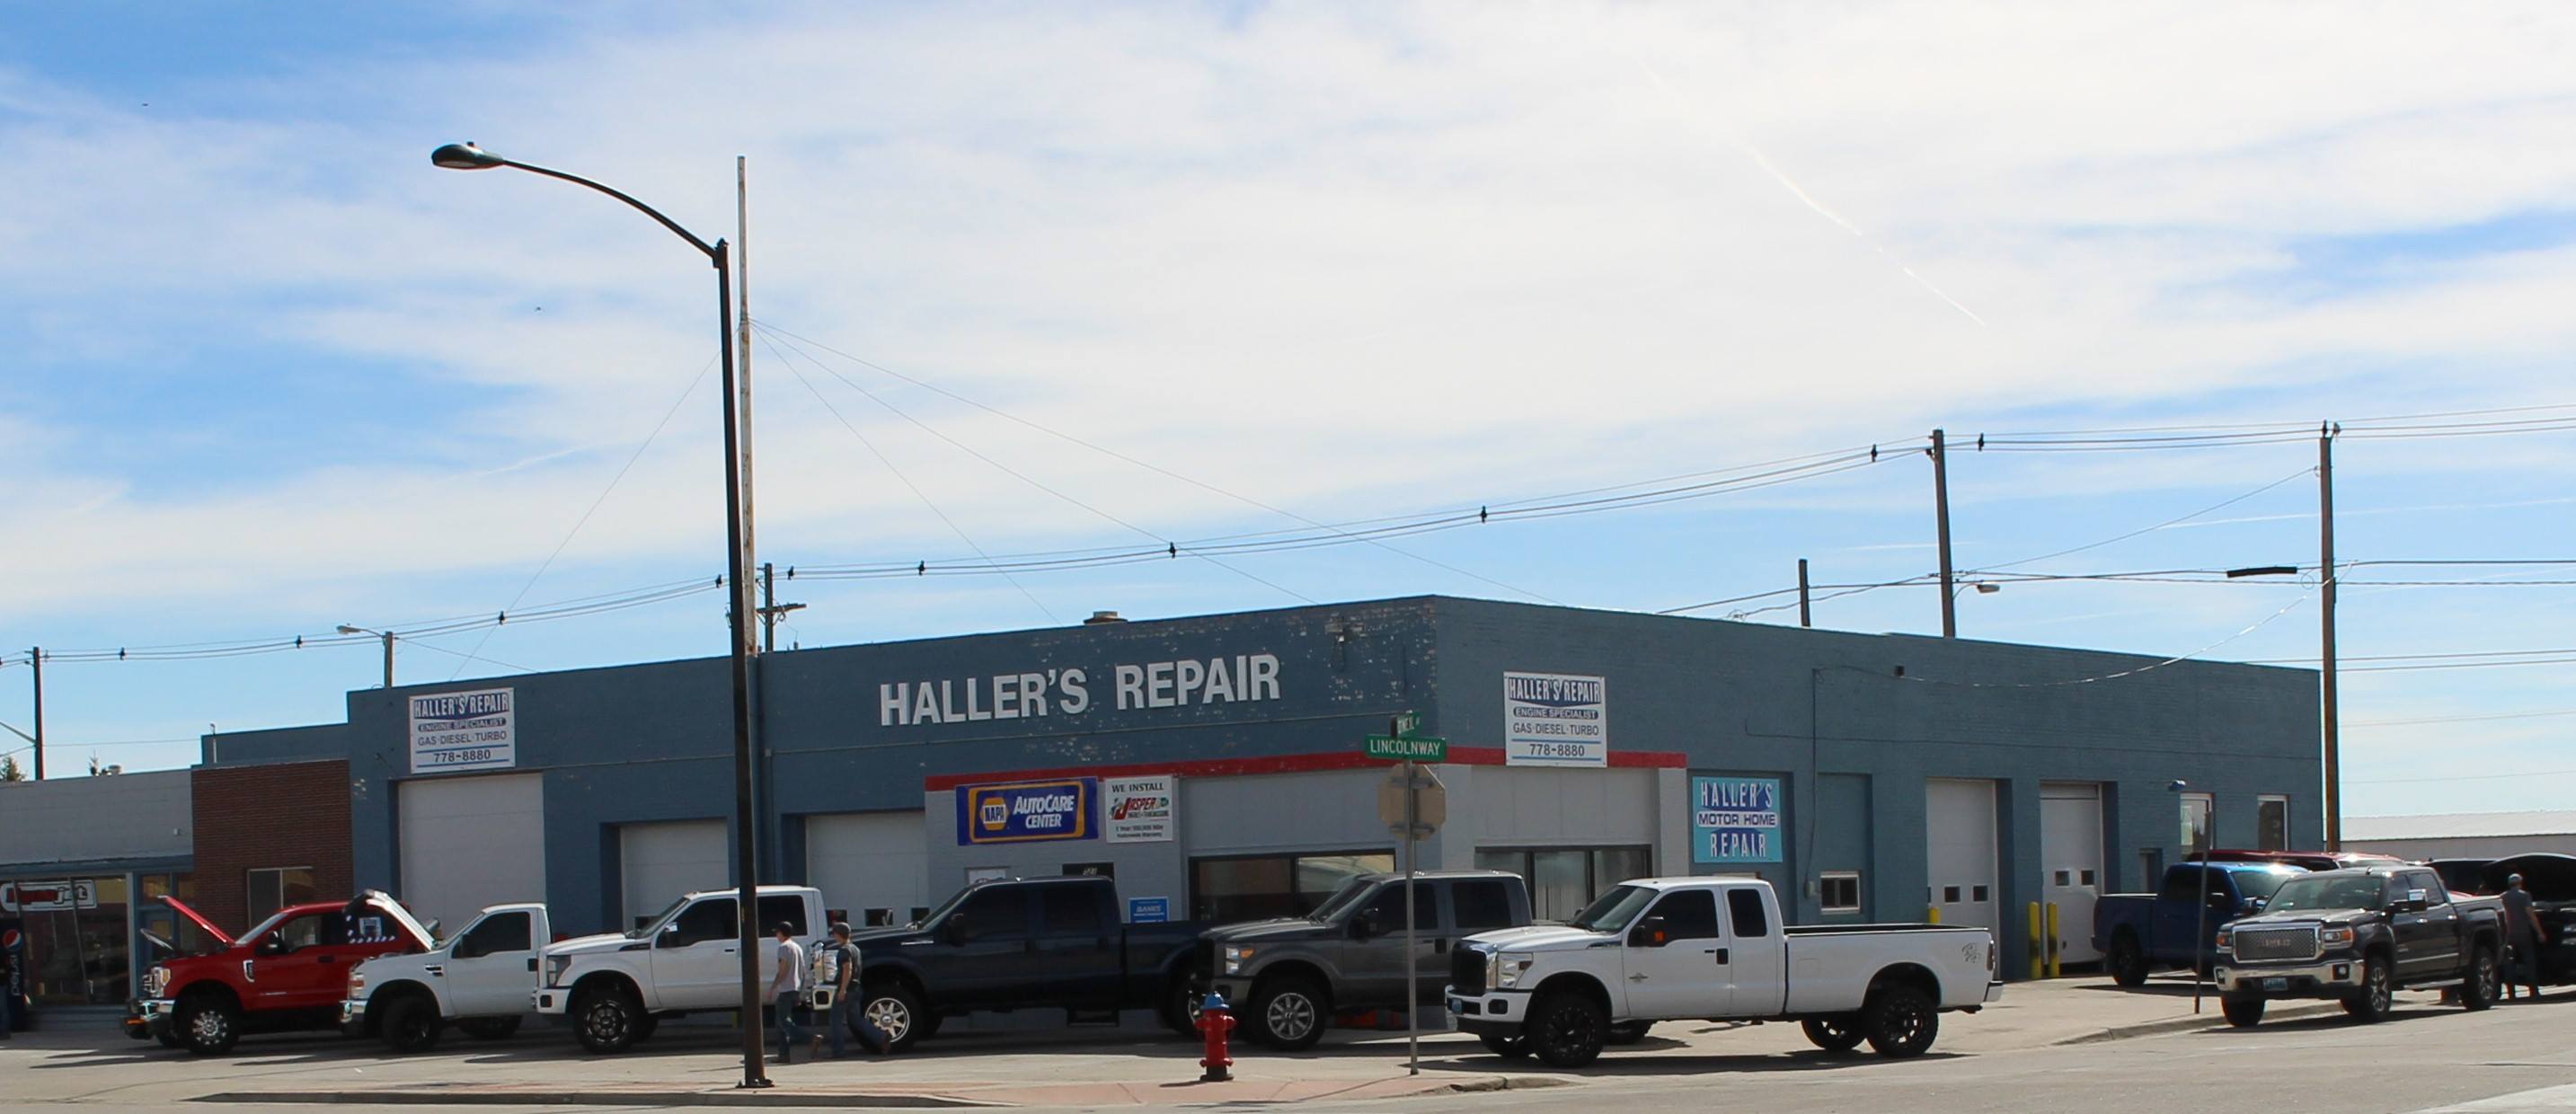 Haller's Repair